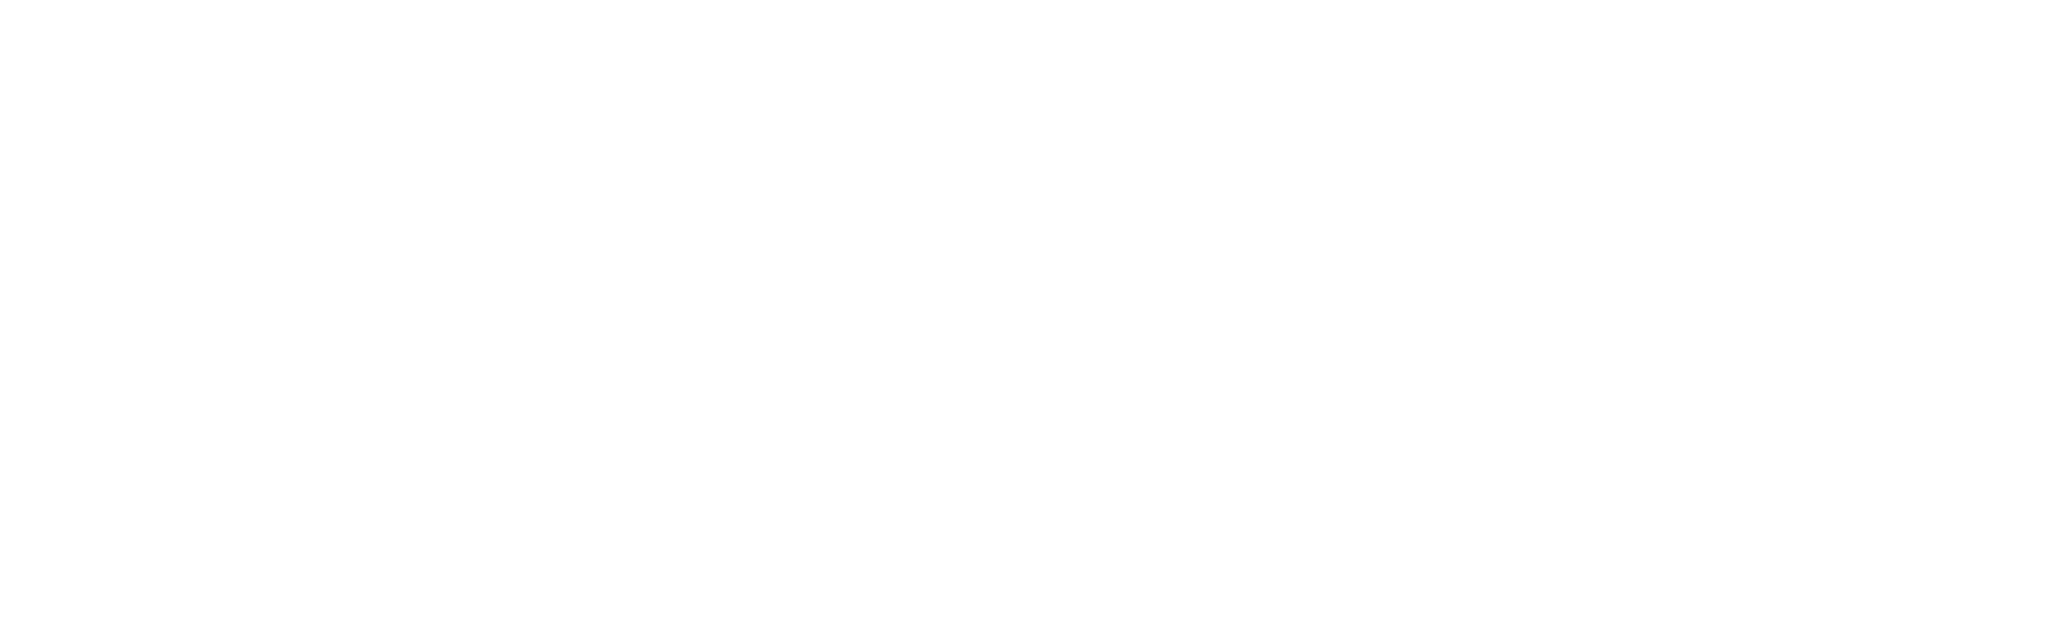 Alexandria Plaza Liquor logo - white